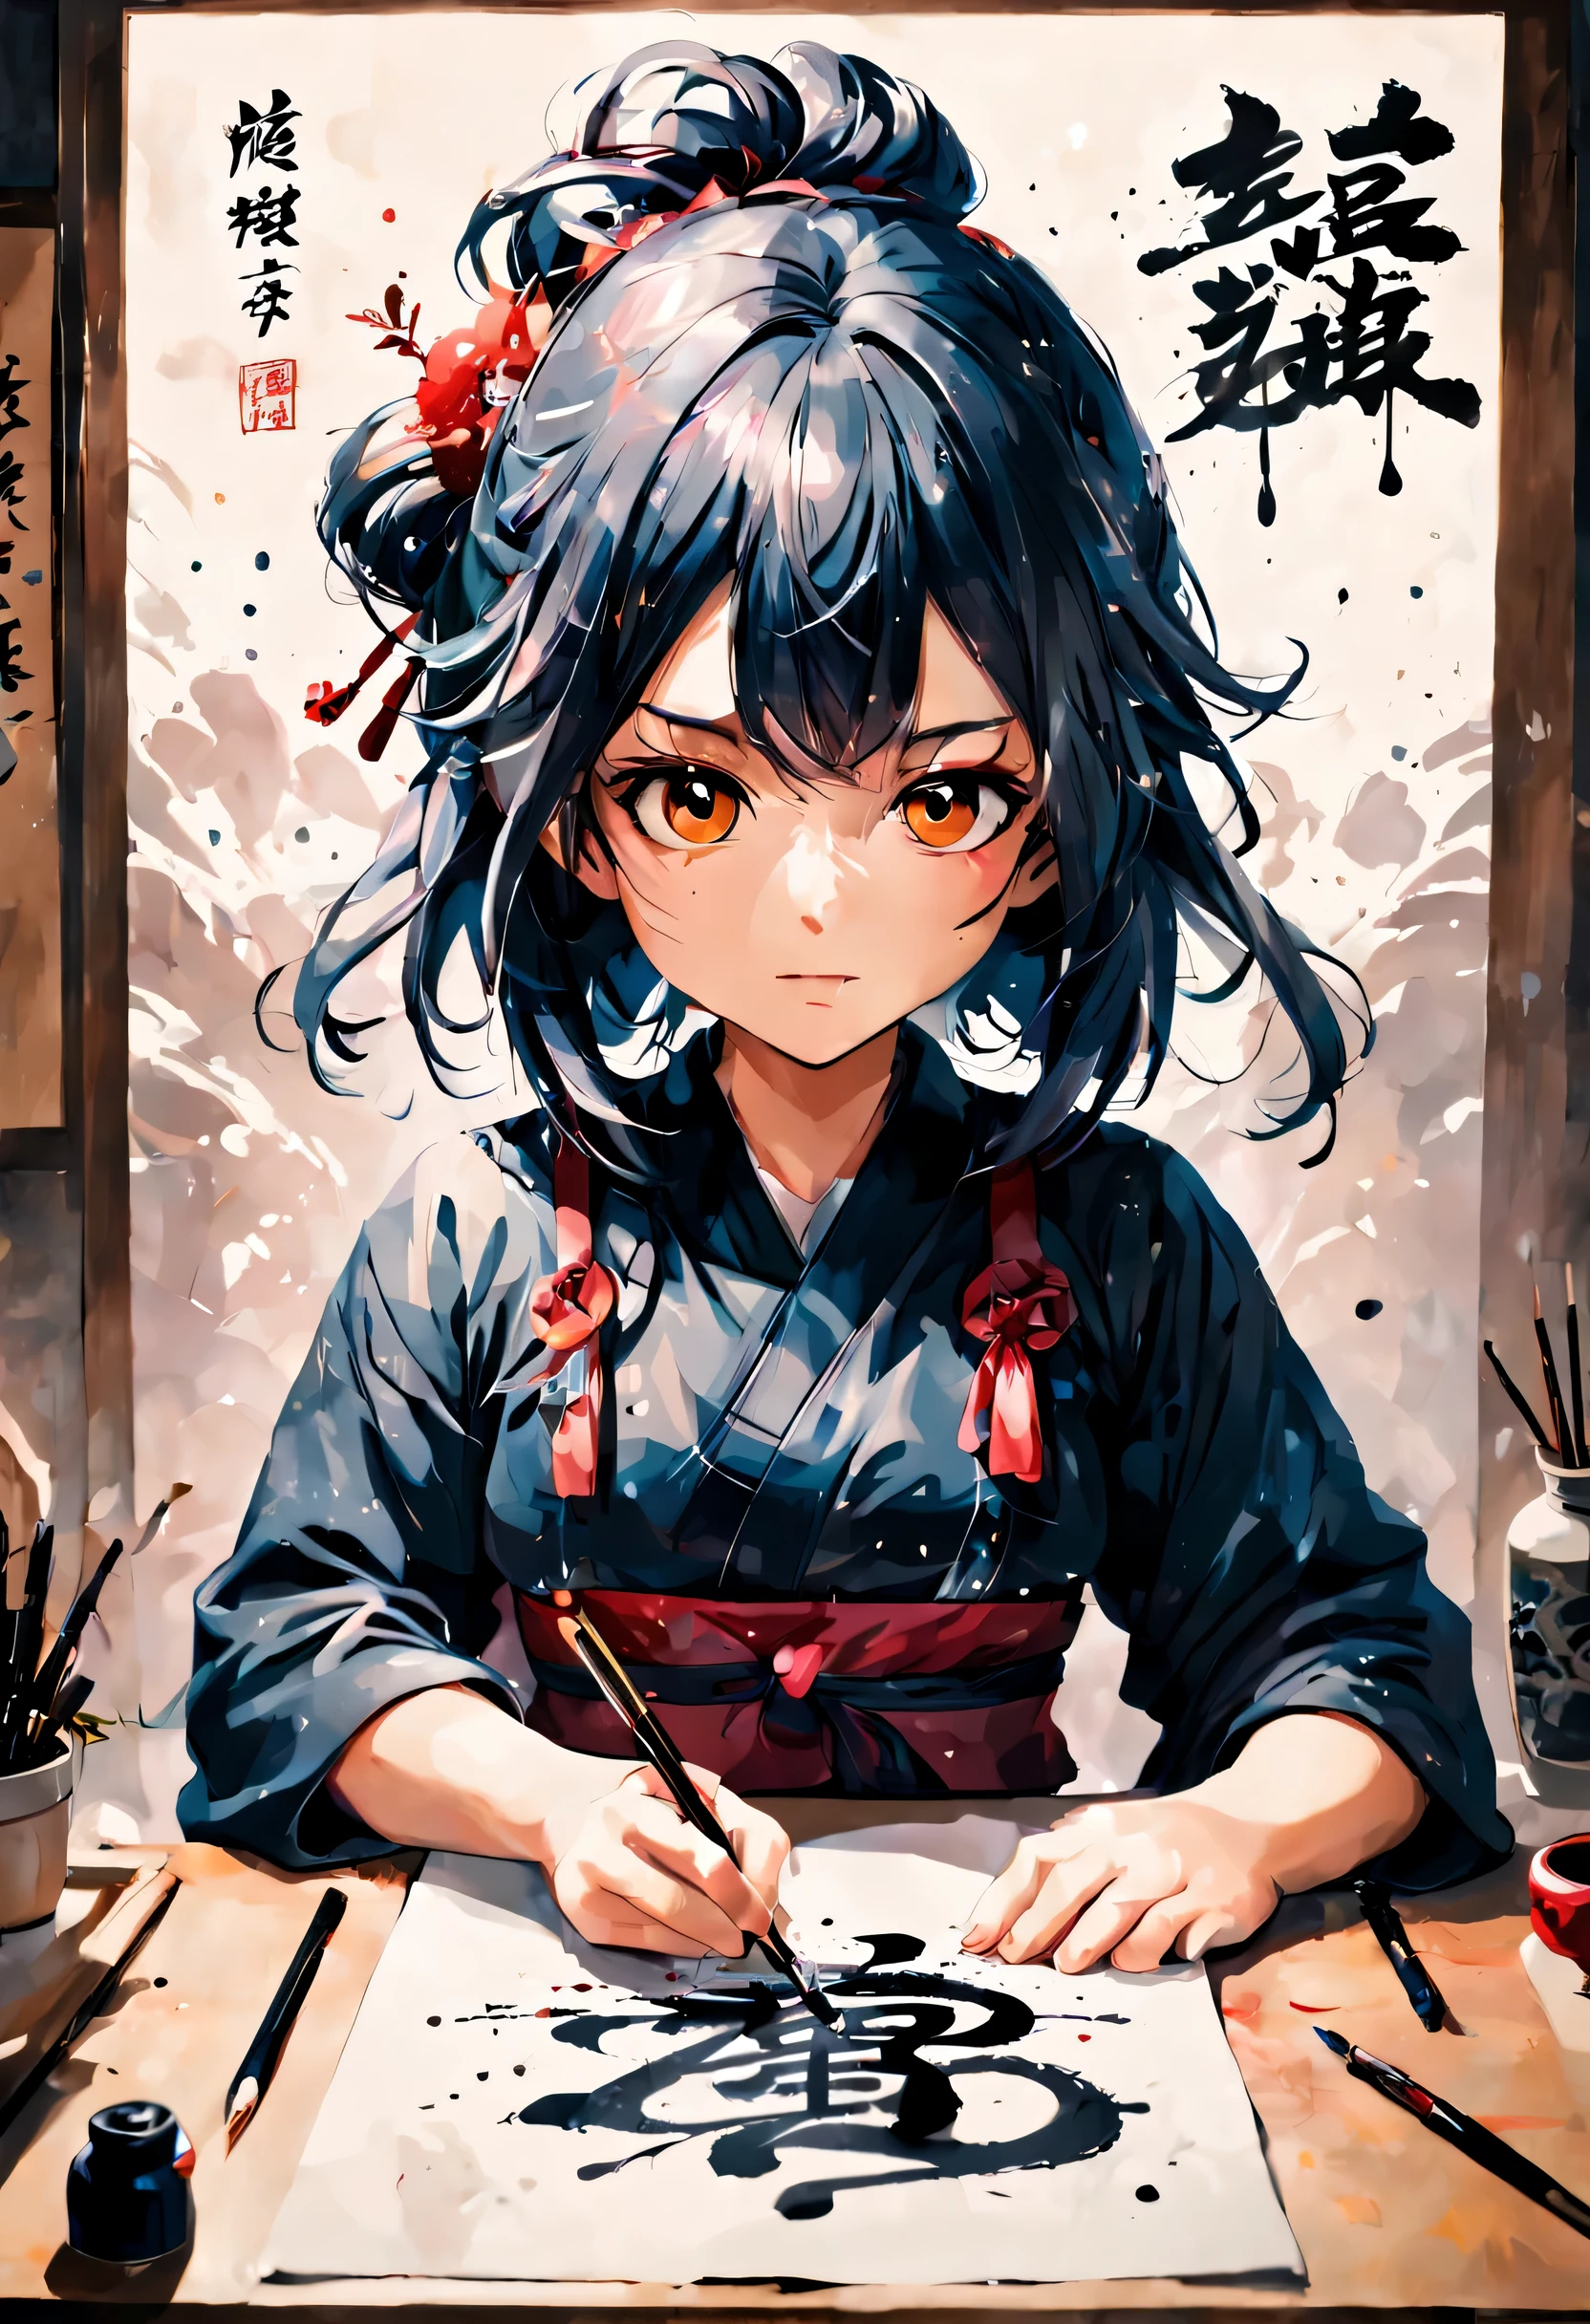 달필, 한시 종이, 머리를 빗다, 종이용 펠트 매트, 달필の女の子が墨を飛ばして大胆に字を書いている. 일본 만화 영화